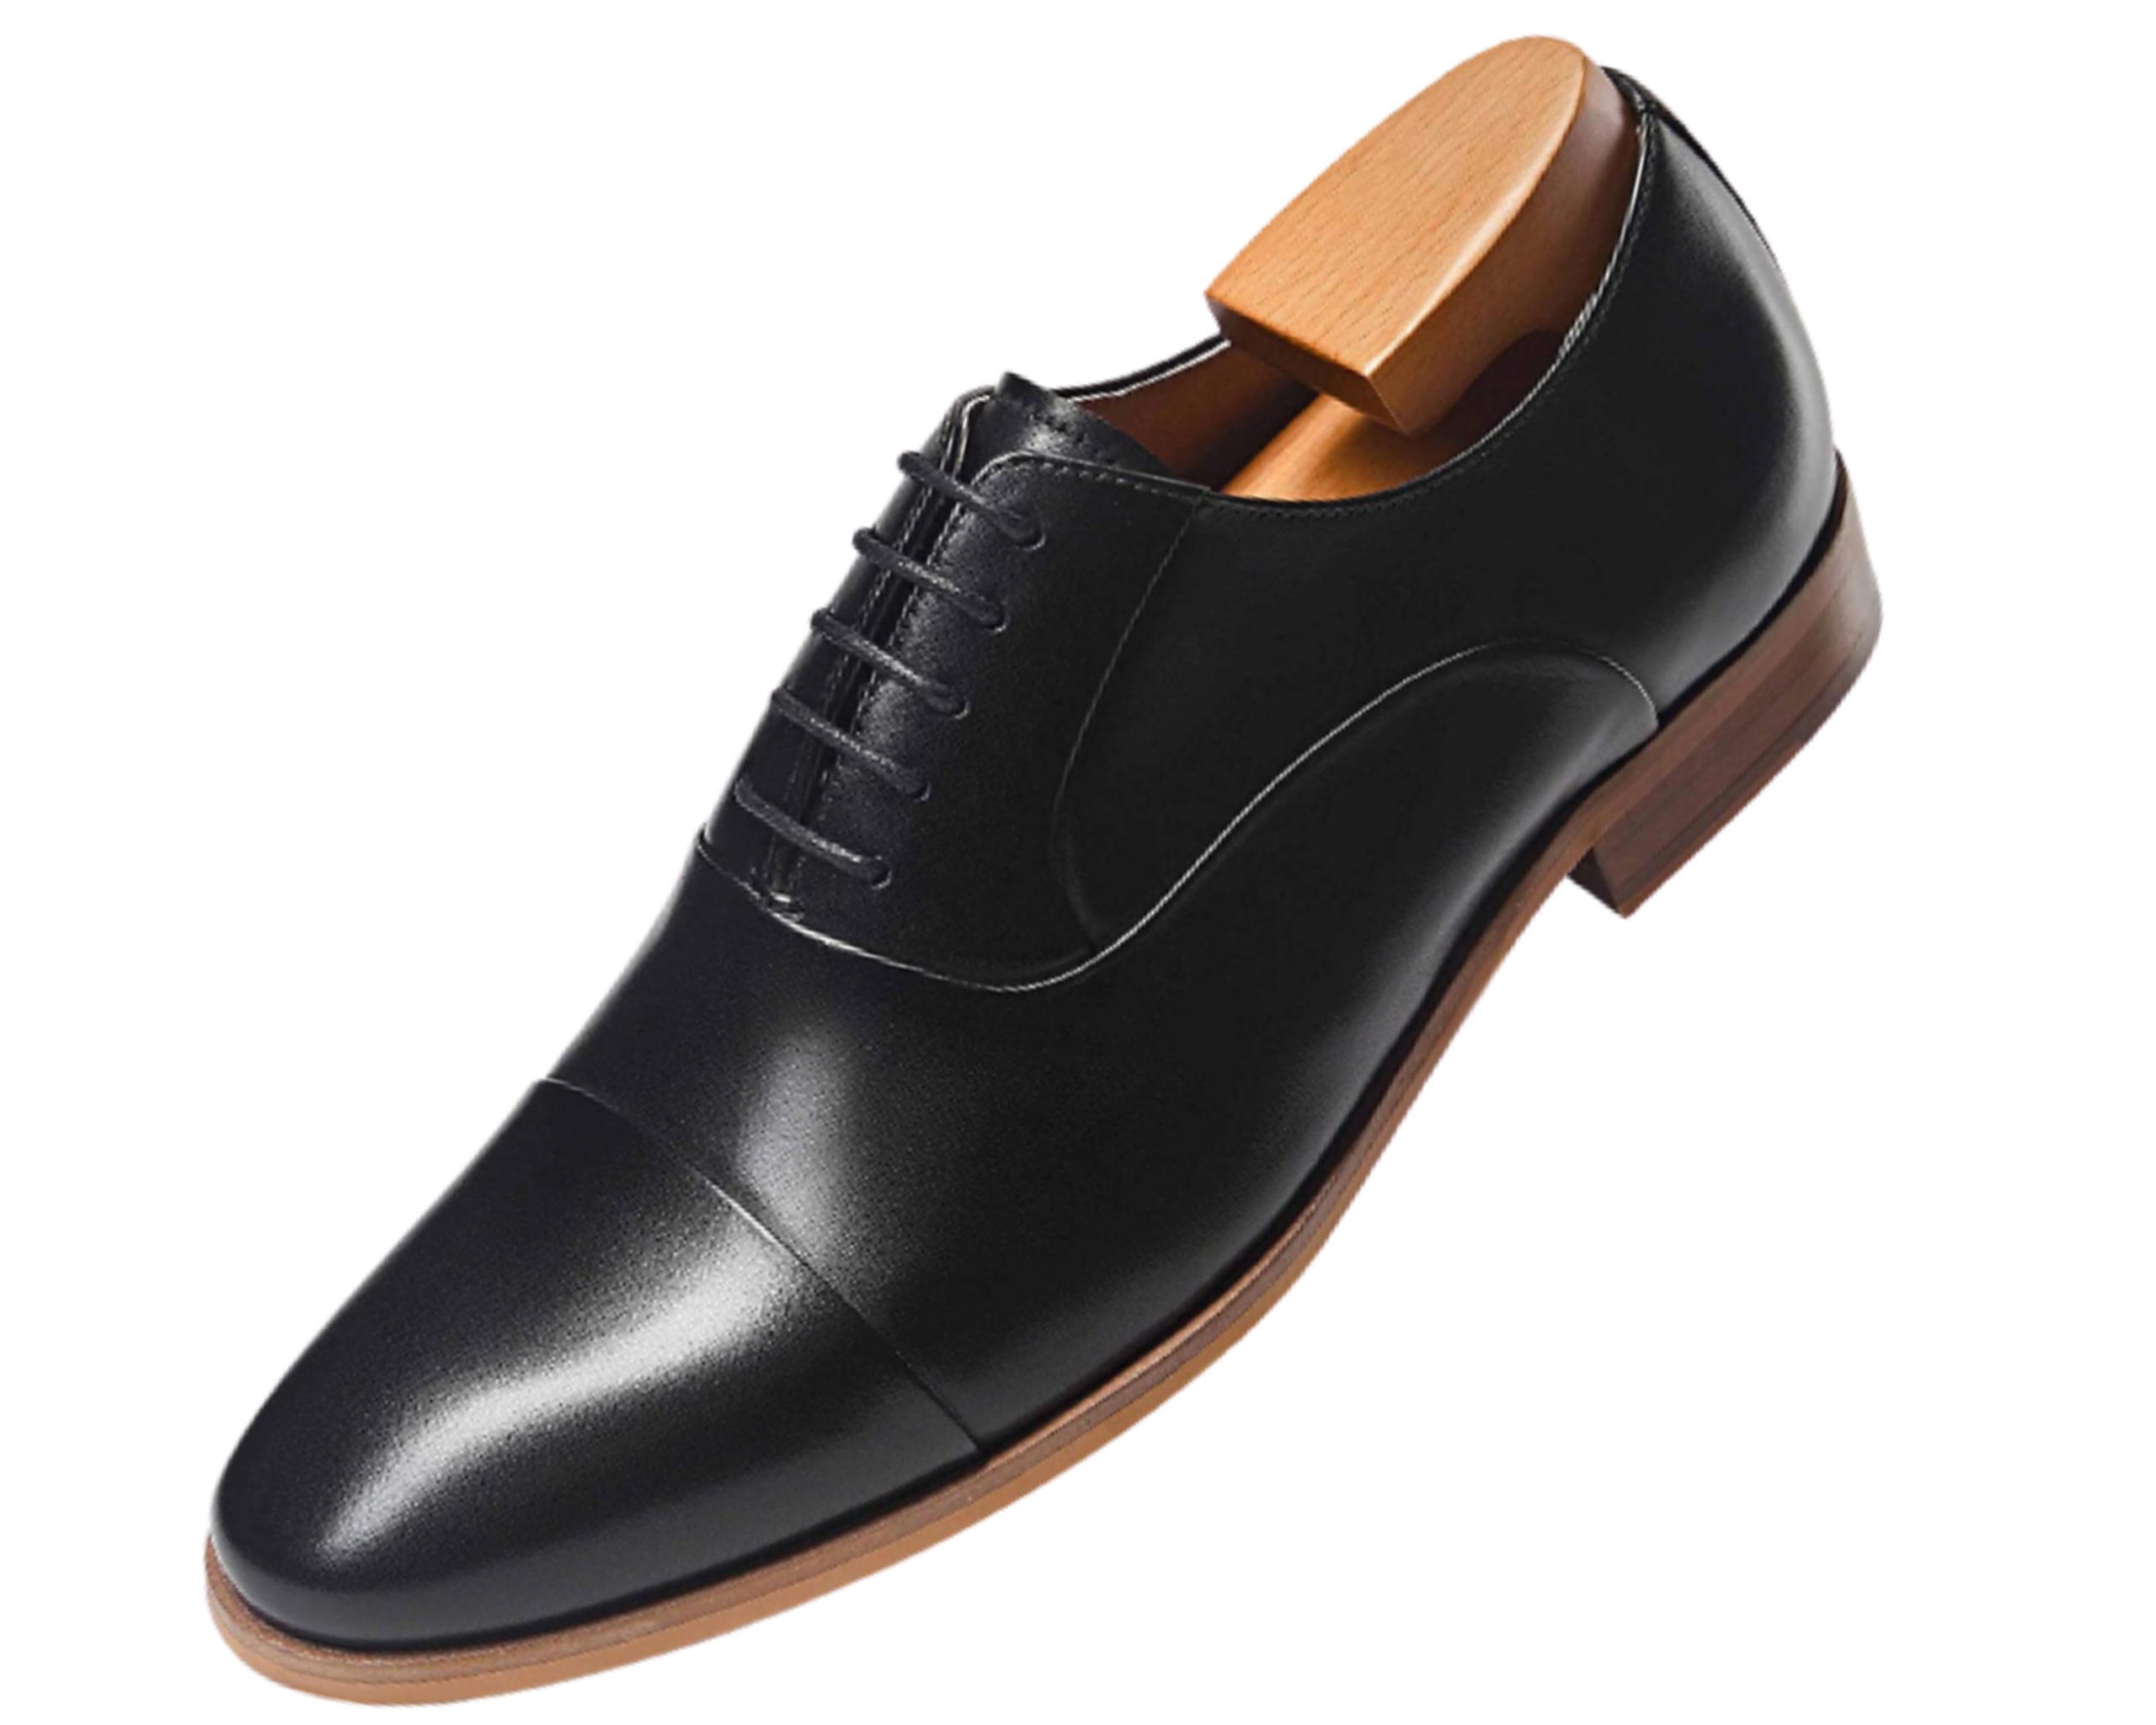 Best 15 Men's Black Dress Shoes You Should Have | Shoe Habour